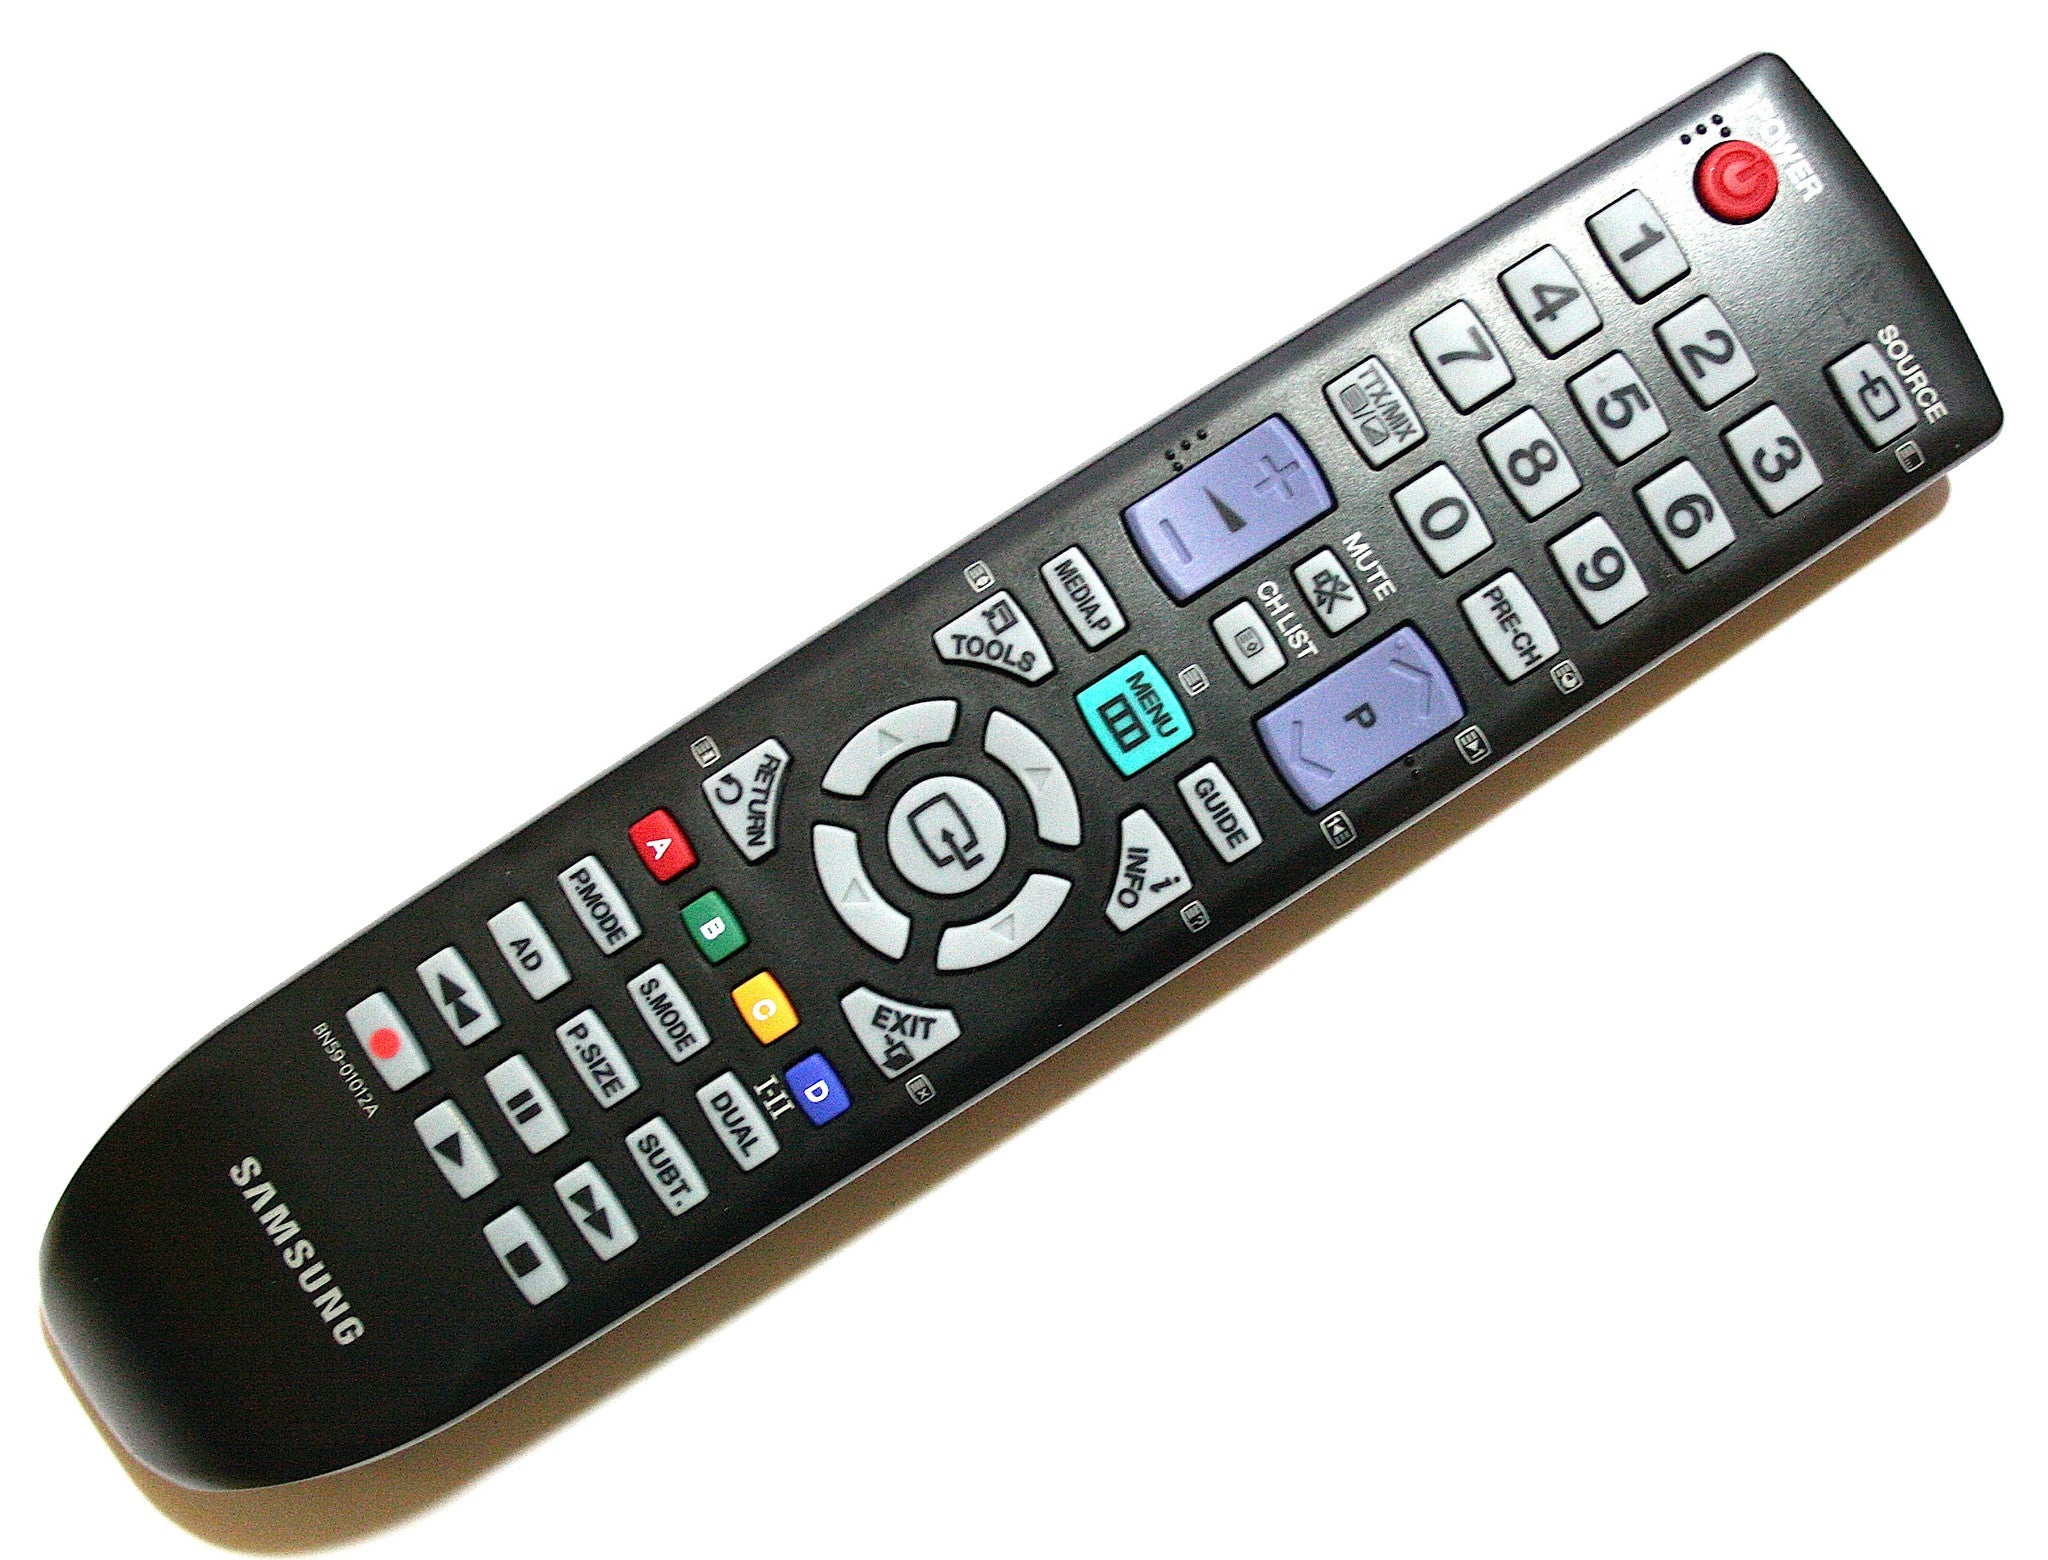 Как выглядит пульт на телевизор. Bn59-01012a пульт. Samsung bn59-01012a. Пульт для телевизора Samsung bn59-01012a. Пульт Ду для телевизора самсунг 32.